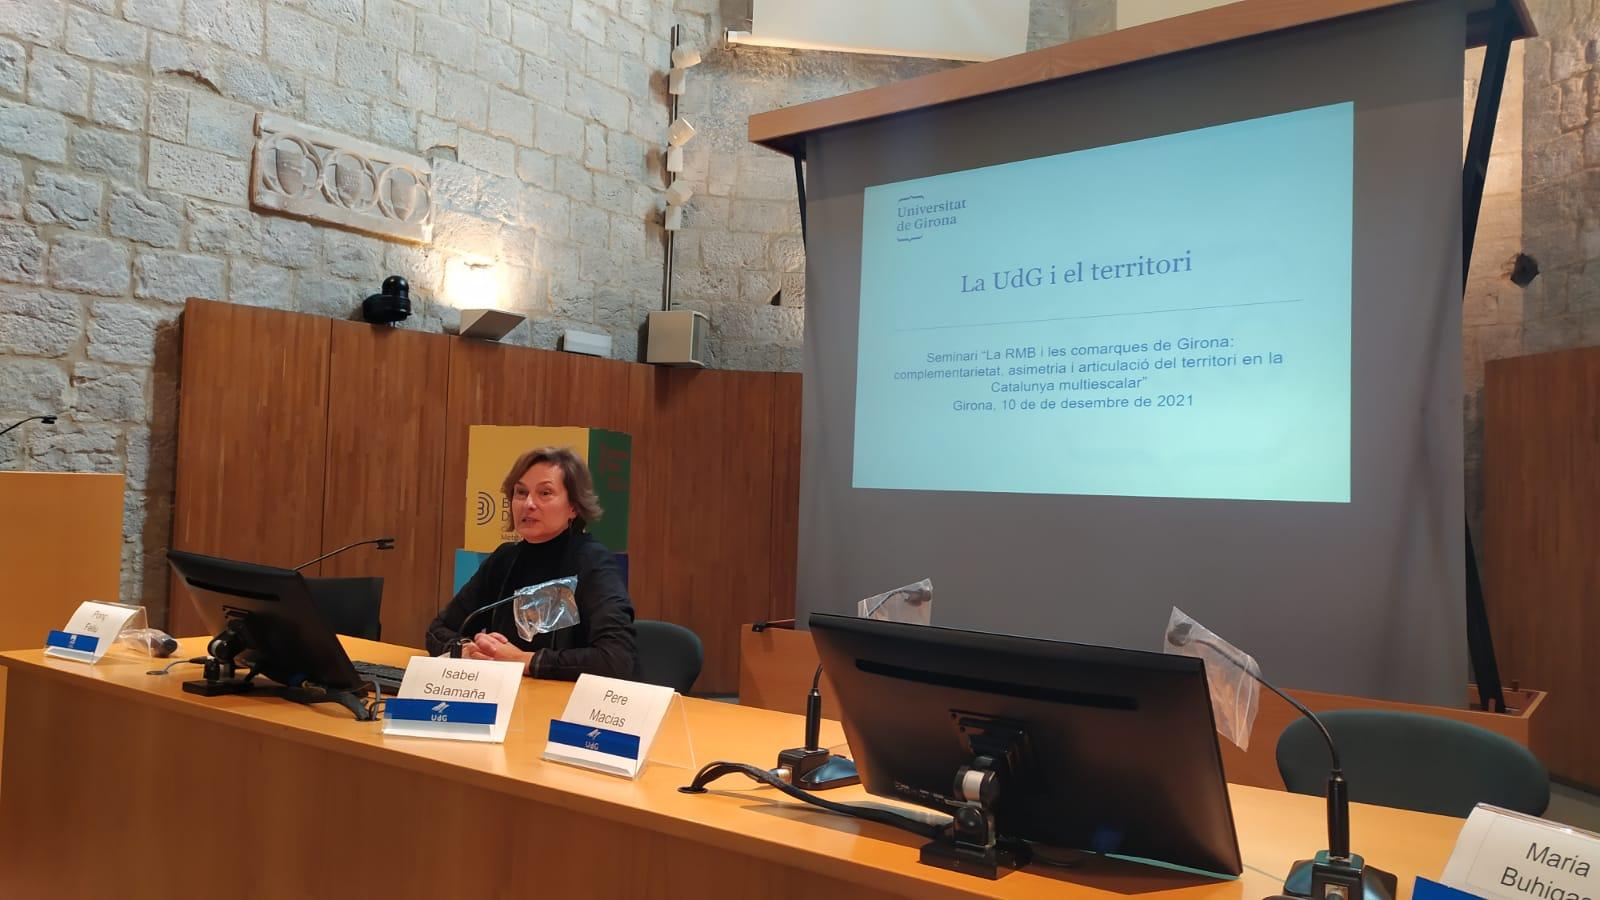 Presentación de Silvia Llach 'La Universidad de Girona y el territorio'